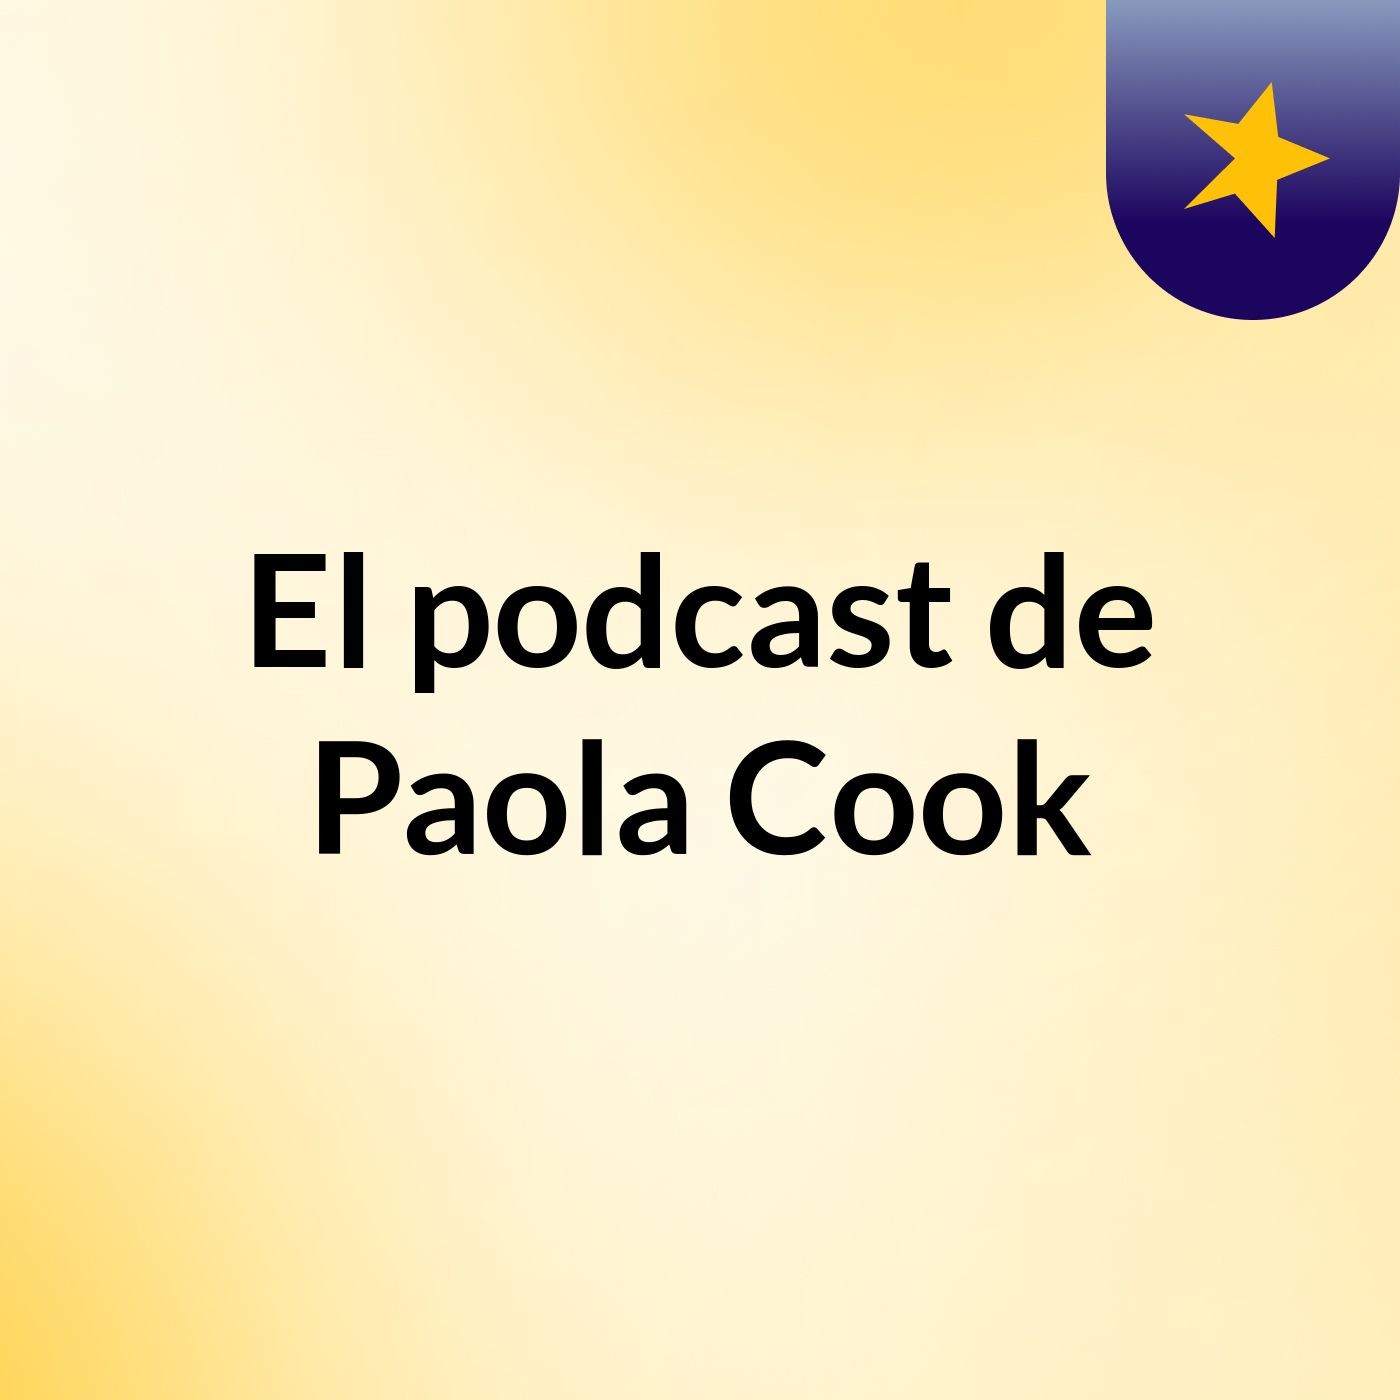 El podcast de Paola Cook